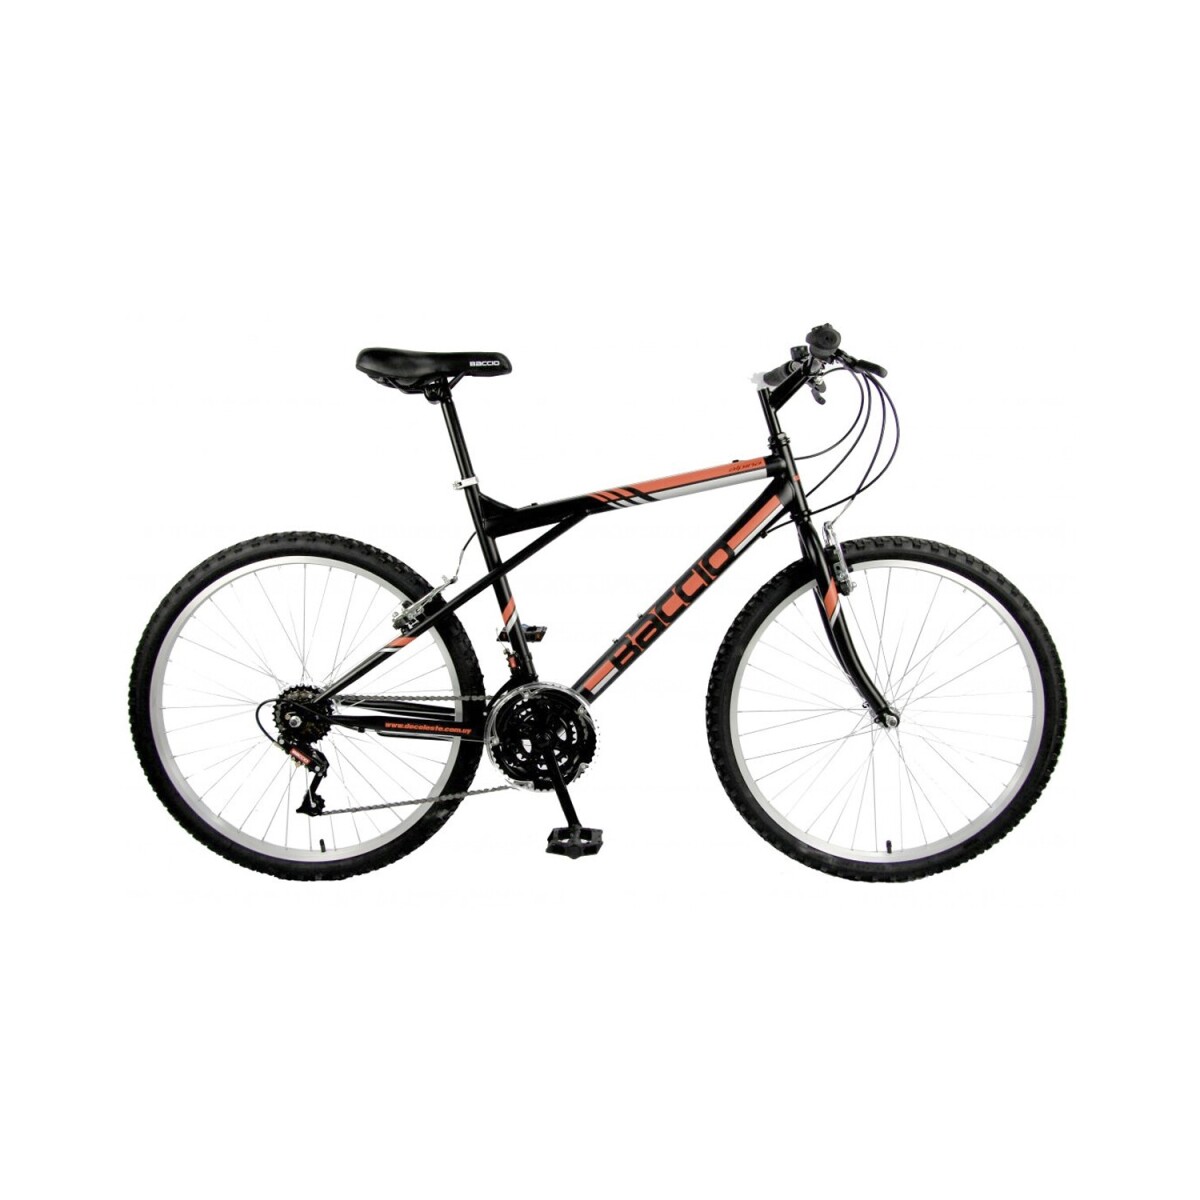 Bicicleta Baccio Alpina Man Montaña rodado 26 con 21 cambios - Negro/Naranja 